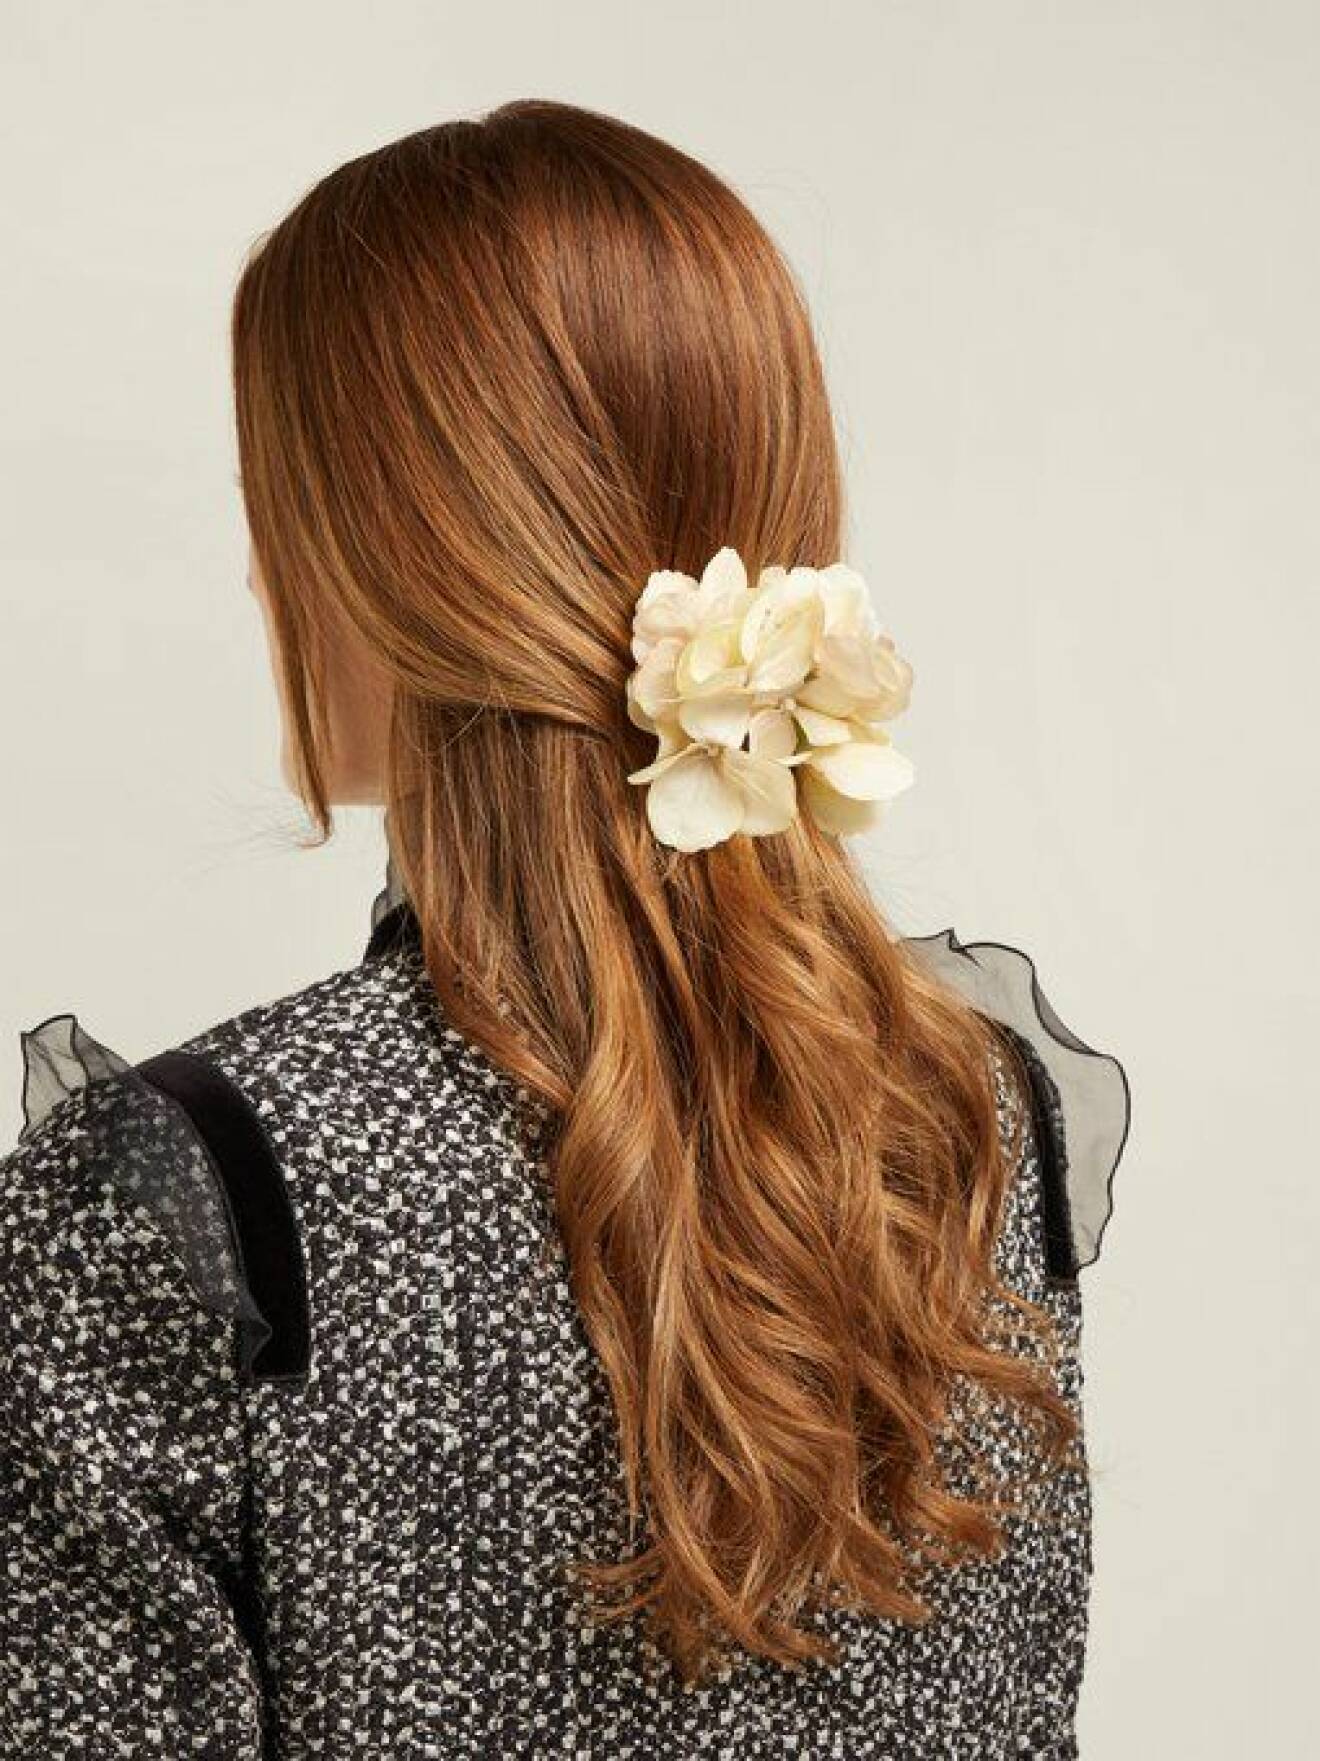 En bild på ett hårspänne i form av en hortensia från Philippa Craddocks nya kollektion på Matchesfashion.com.